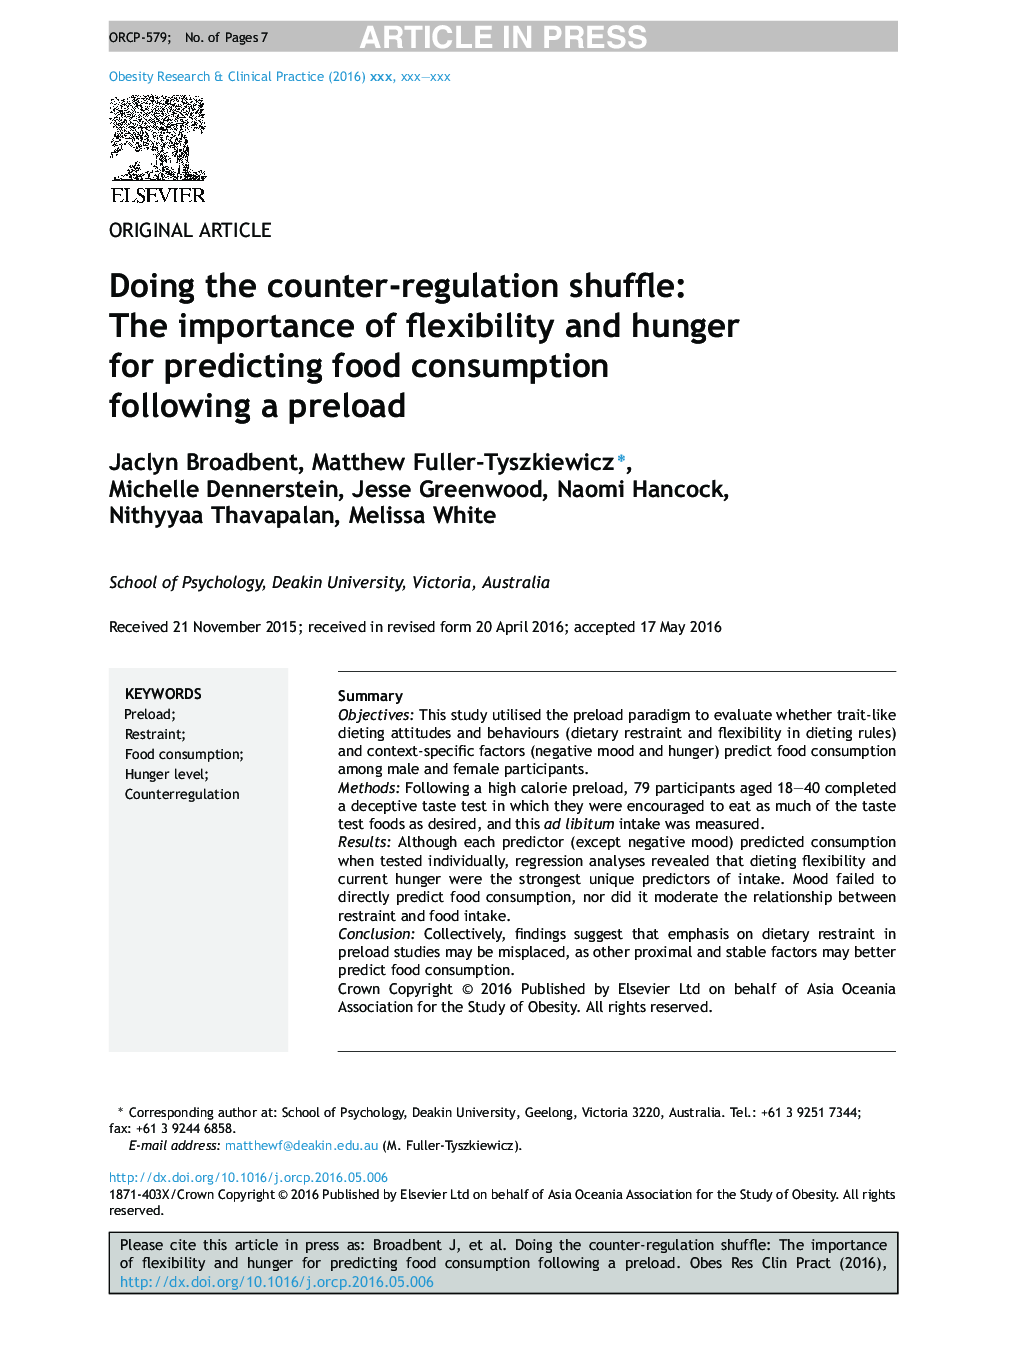 انجام تغییرات مقابله با مقررات: اهمیت انعطاف پذیری و گرسنگی برای پیش بینی مصرف مواد غذایی پس از پیش بارگیری 